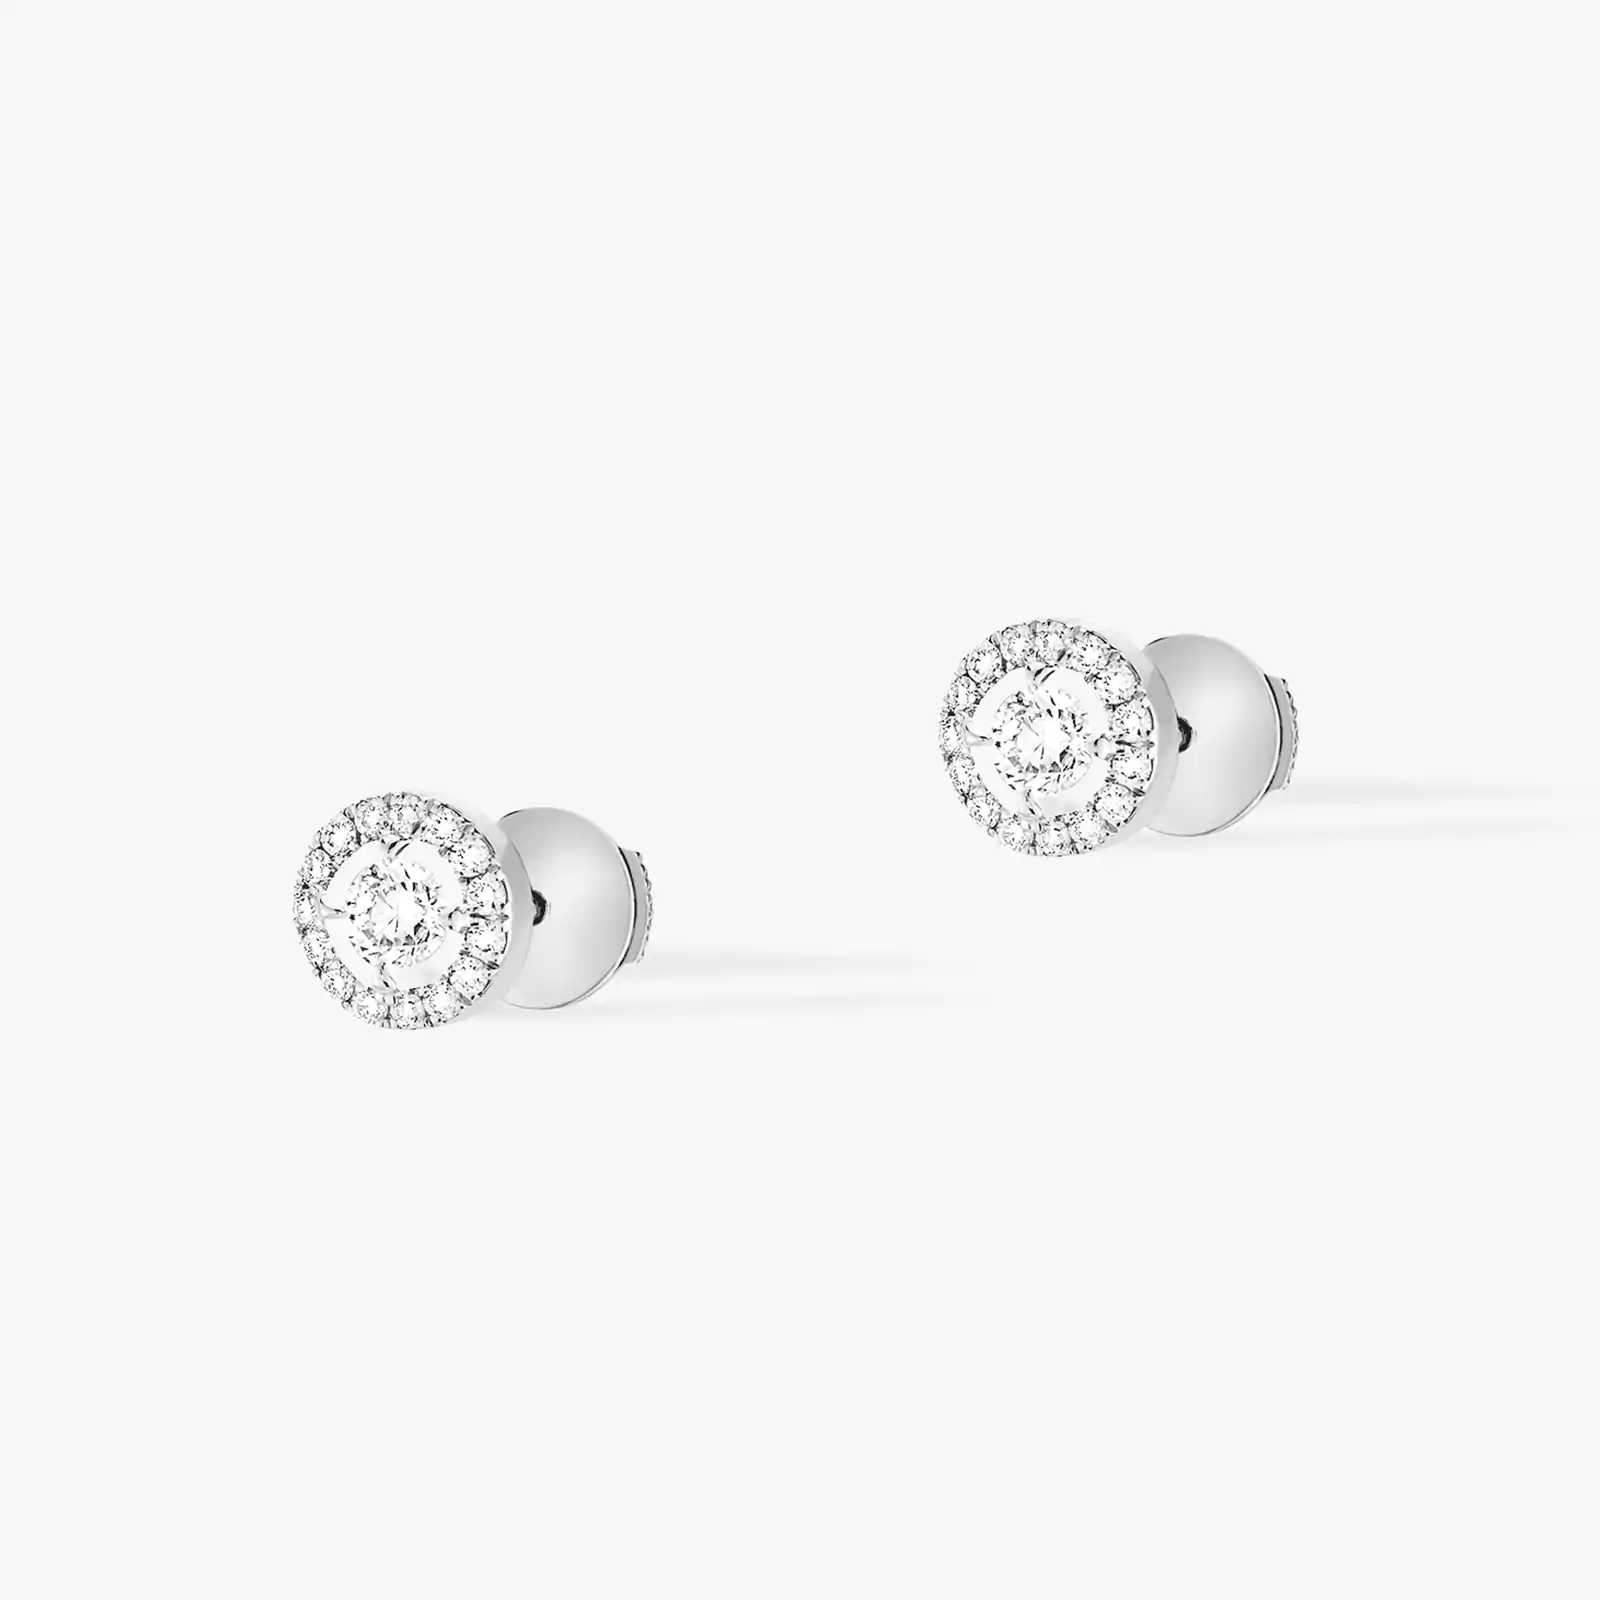 Boucles d'oreilles Femme Or Blanc Diamant Joy Diamants Ronds 0,10ct x 2 06991-WG